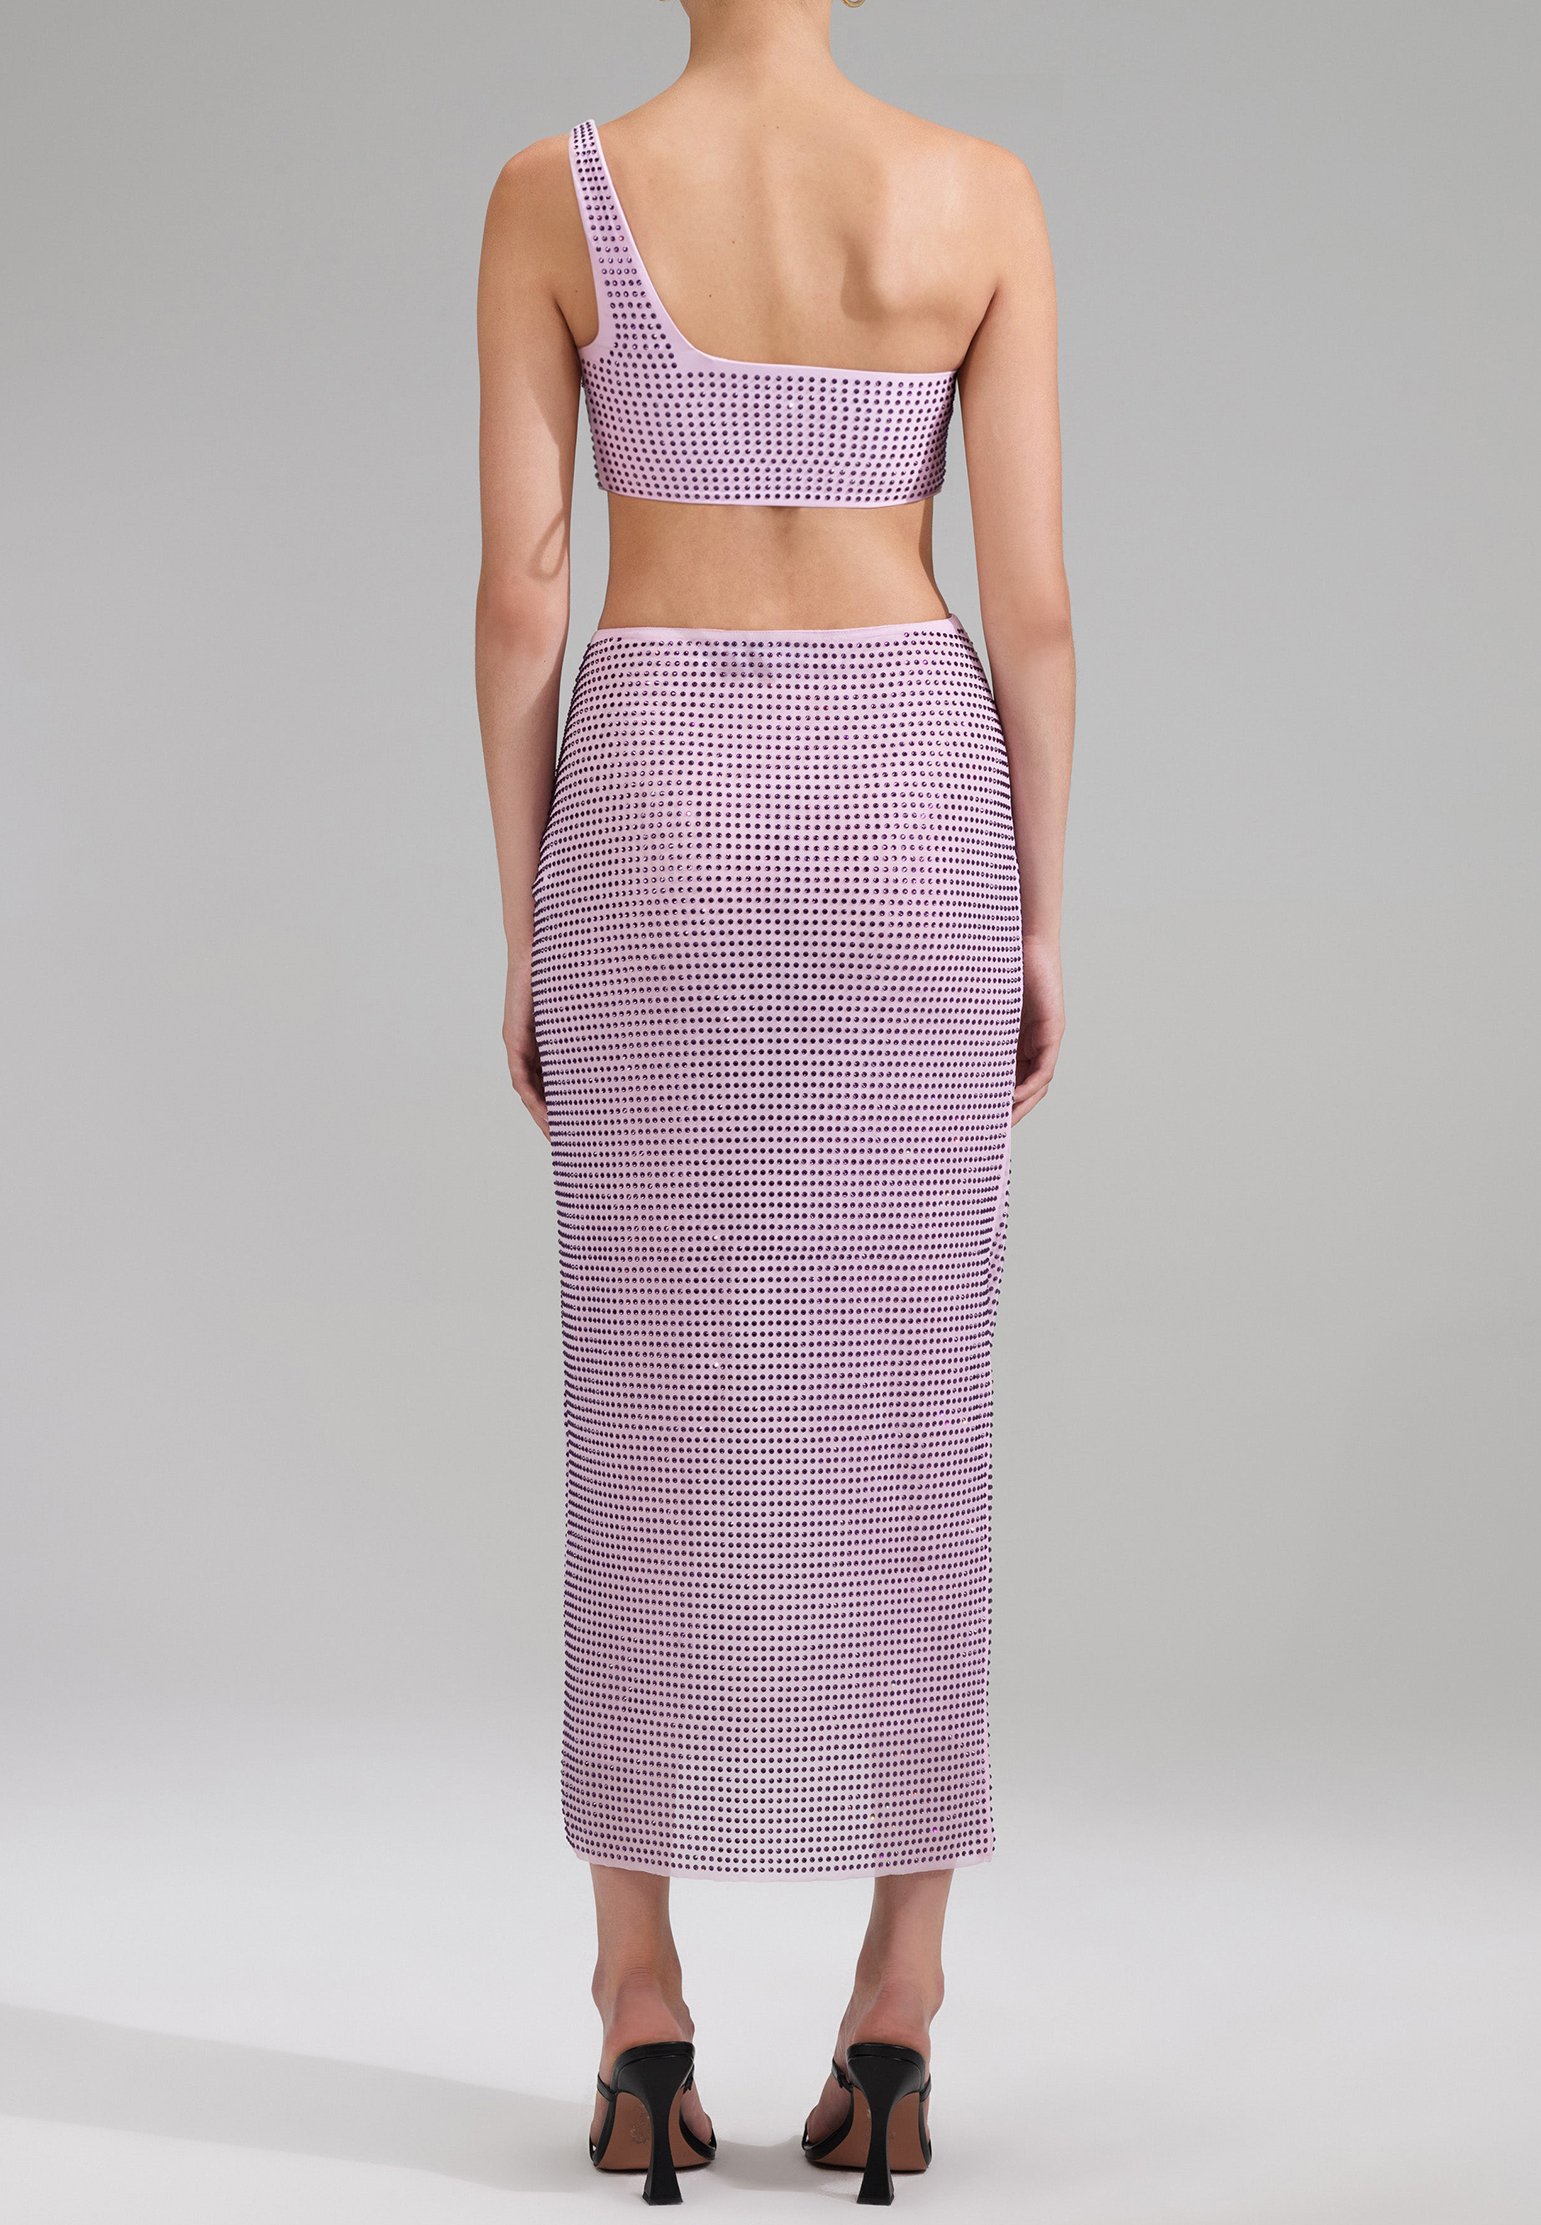 Bikini top SELF-PORTRAIT Color: lilac (Code: 2241) in online store Allure